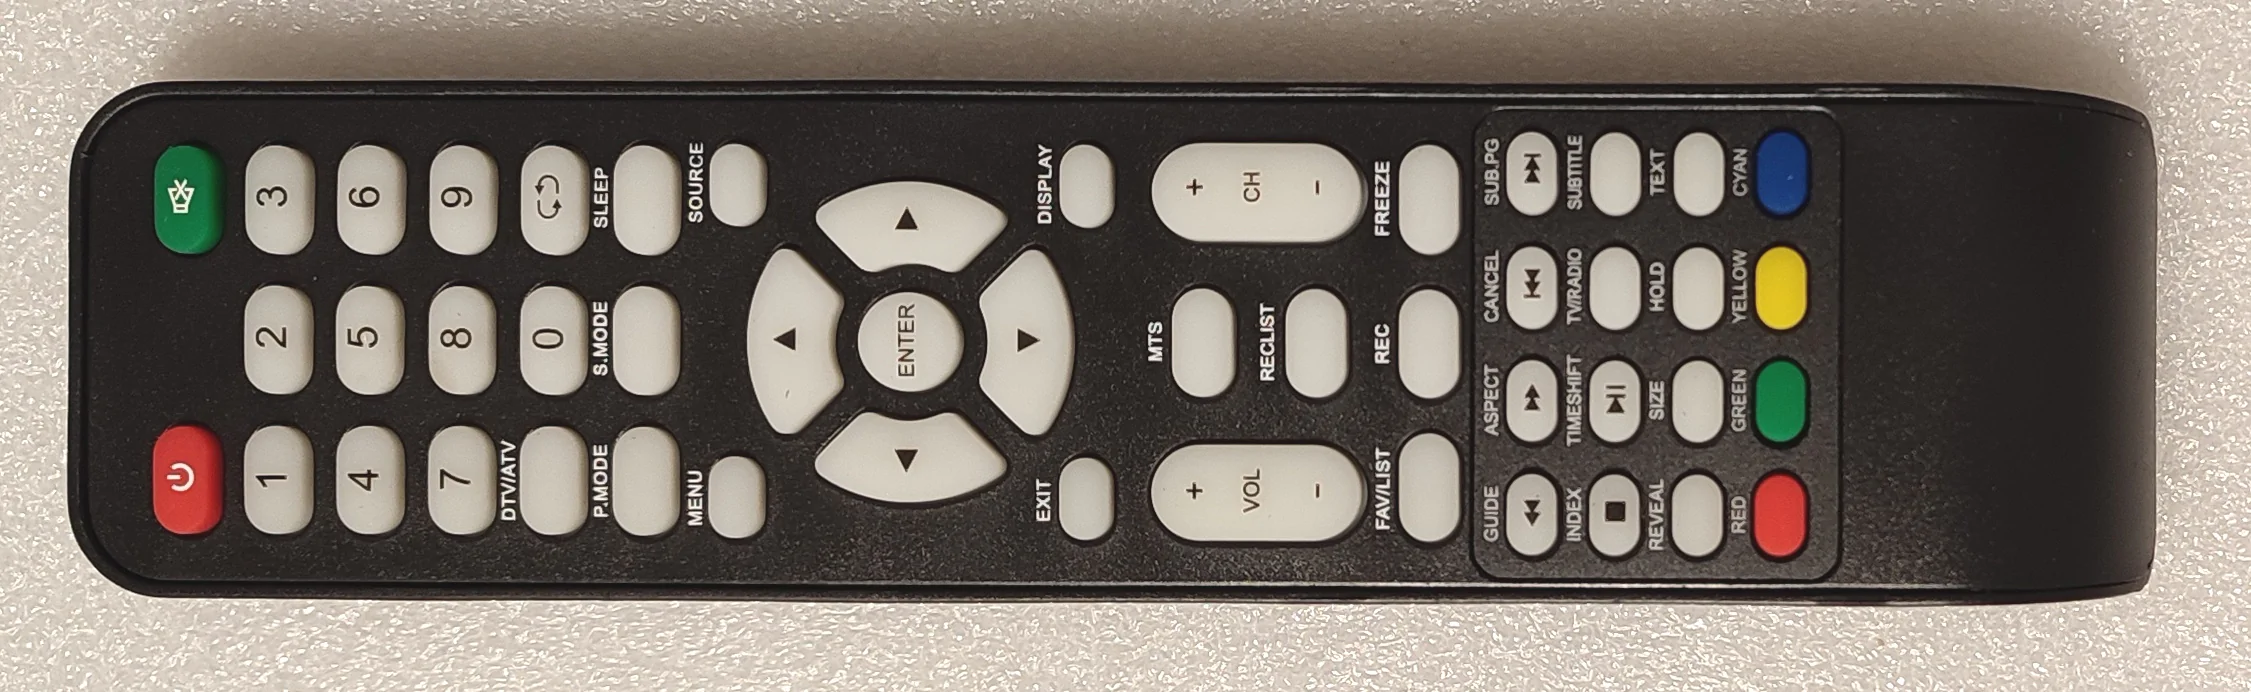 Telecomando originale per TV Smart Tech LE32D11TS - LE2819TS - TV Modules